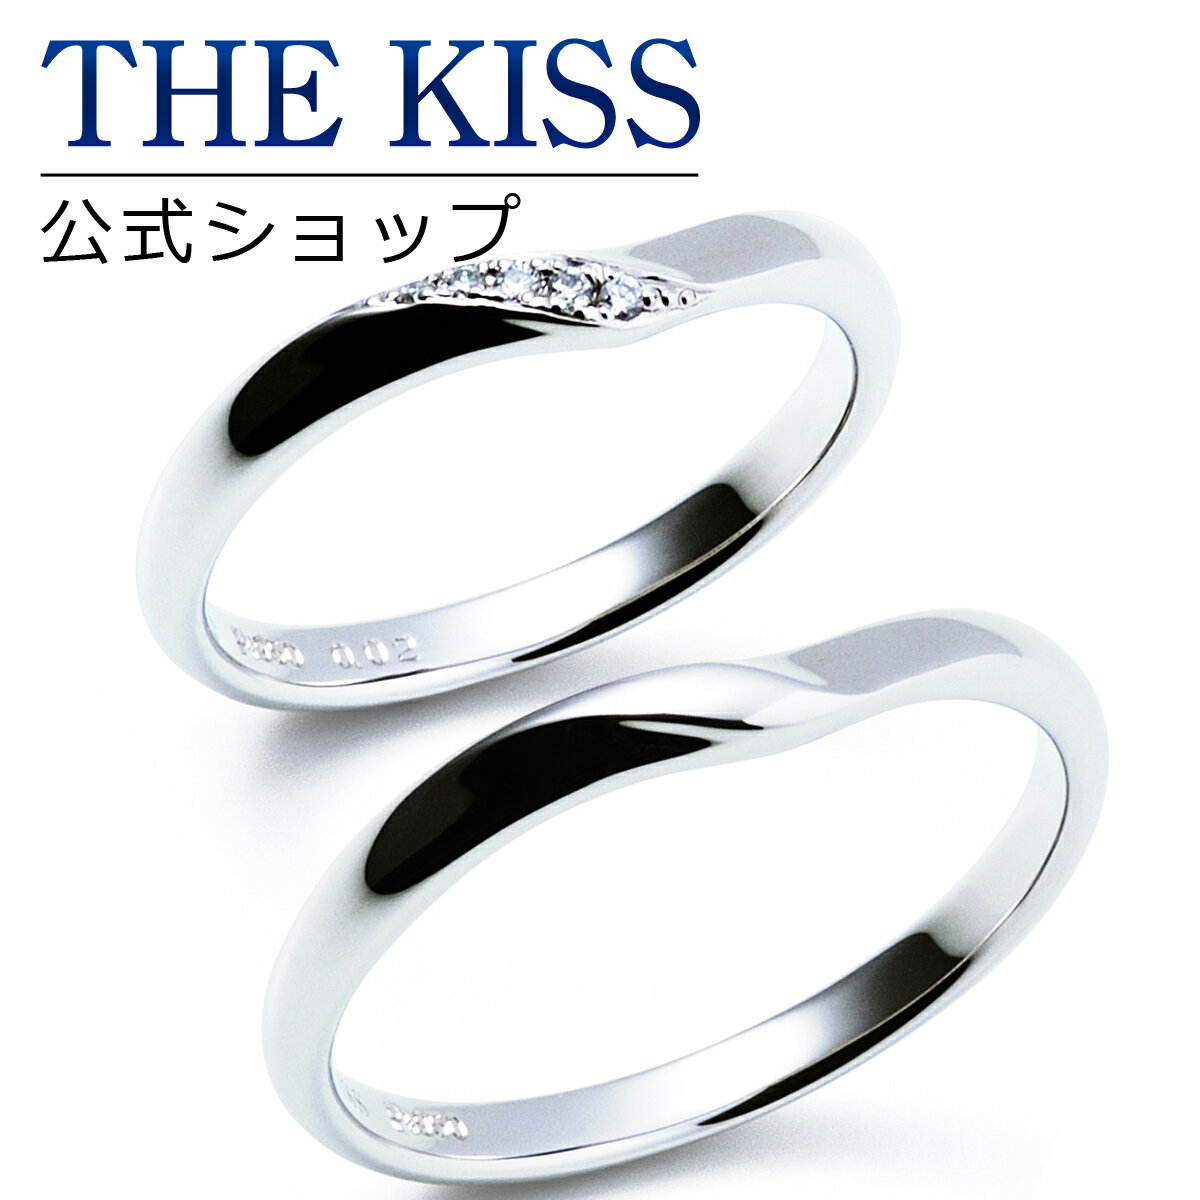 【ラッピング無料】【刻印無料】【THE KISS Anniversary】 プラチナ マリッジ リング 結婚指輪 ペアリング THE KISS ザキッス リング・指輪 7061116061-7061116062 セット シンプル 男性 女性 2個セット 母の日